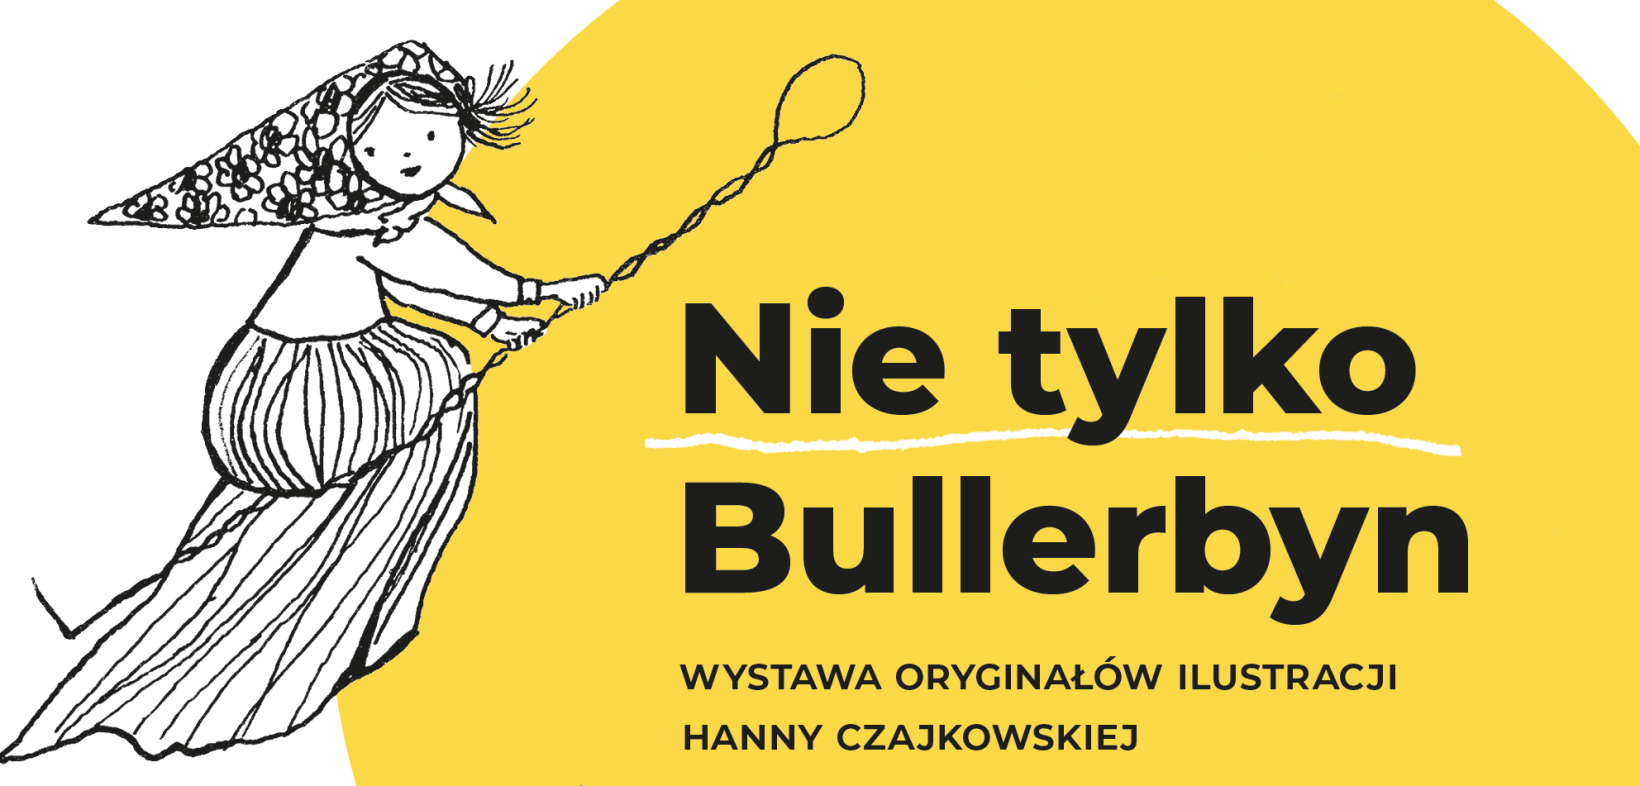 Napis „Nie tylko Bullerbyn” - wystawa oryginałów ilustracji Hanny Czajkowskiej o raz ilustracja - dziewczynka latająca na miotle.